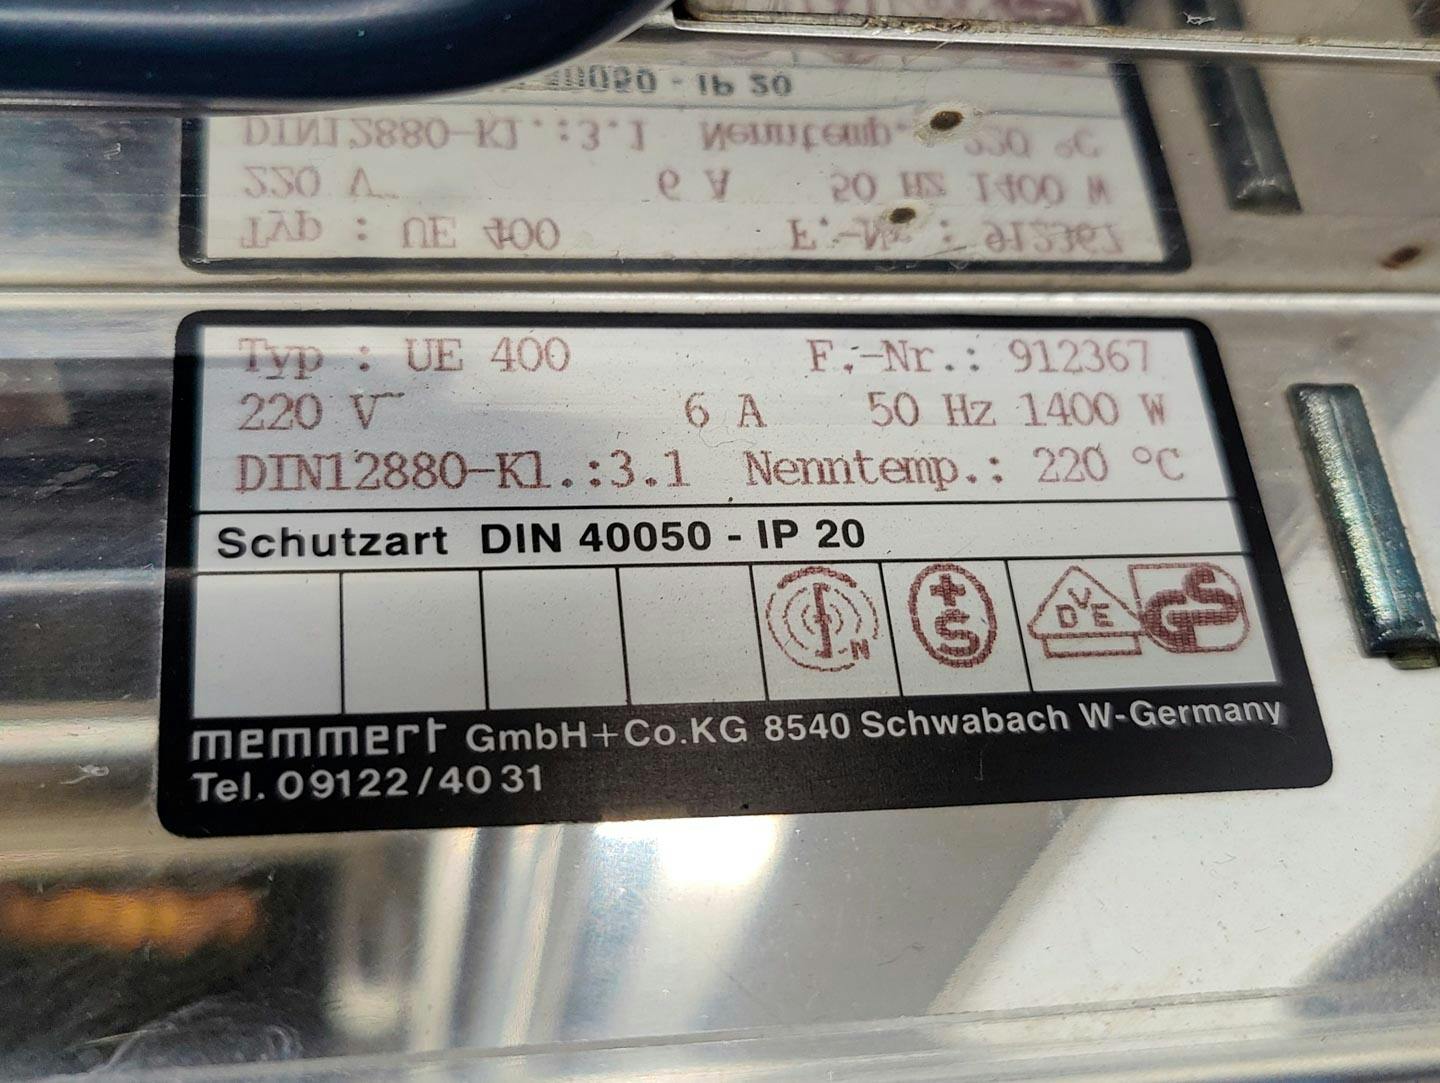 Memmert UE-400 - Drying oven - image 9